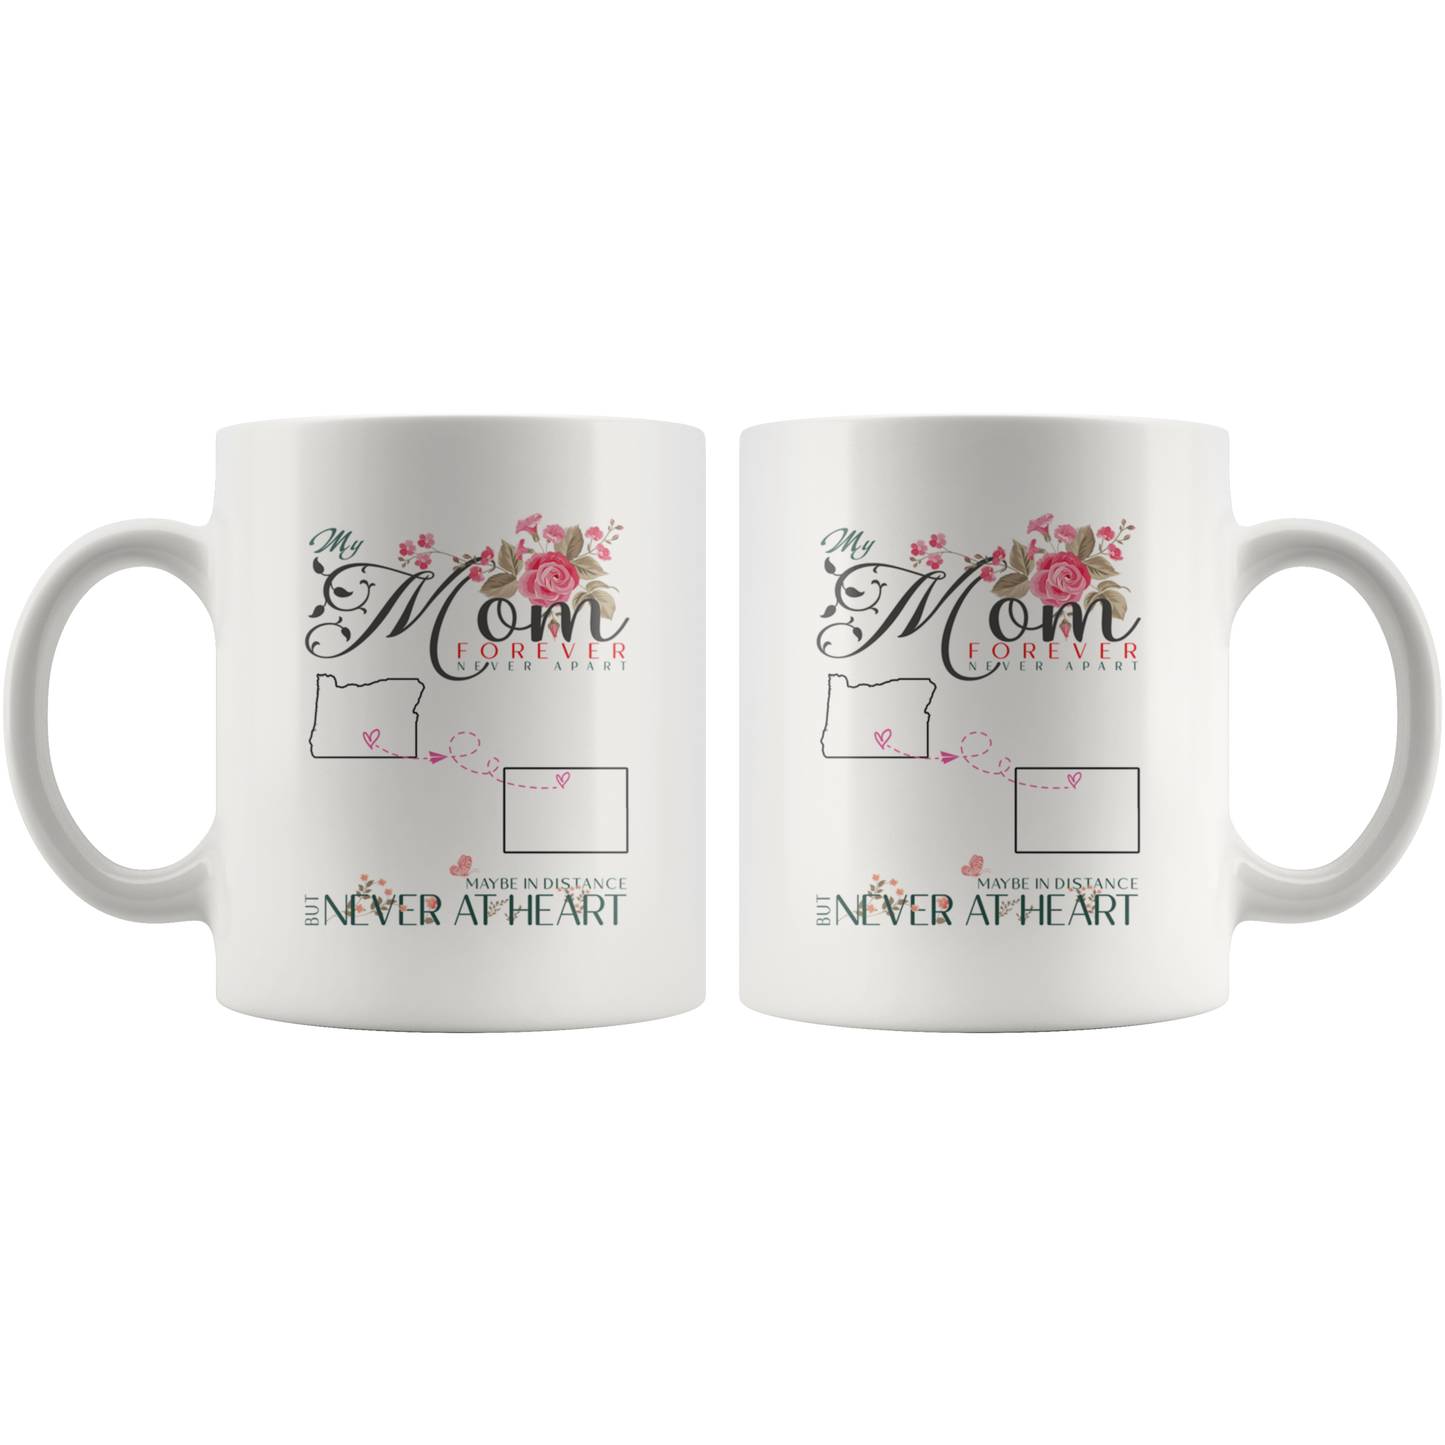 M-20321571-sp-25829 - [ Oregon | Colorado ] (mug_11oz_white) Personalized Mothers Day Coffee Mug - My Mom Forever Never A